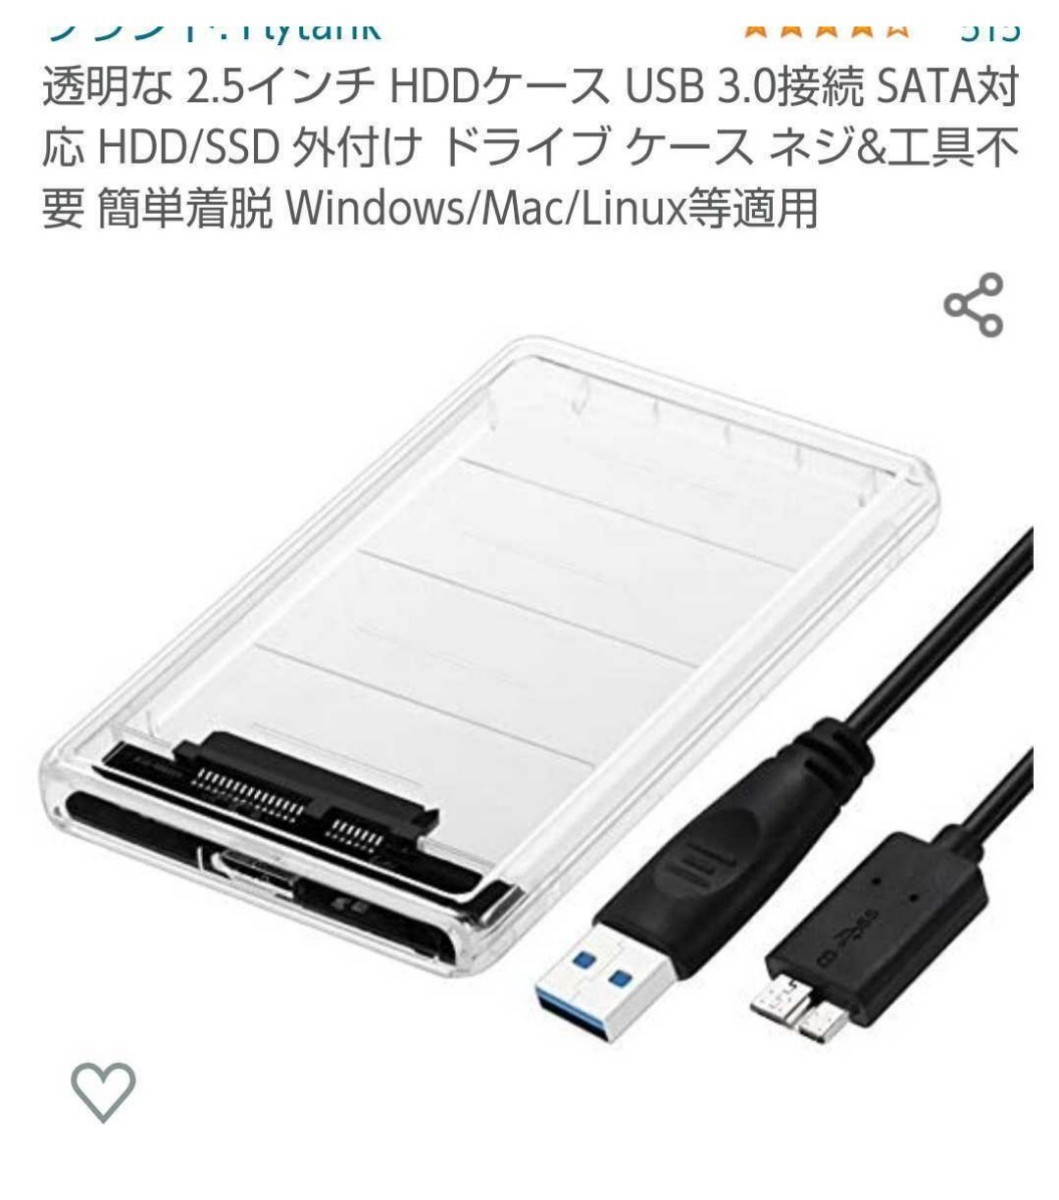 USB3.0外付けポータブルHDD320GB(HDD HGST)